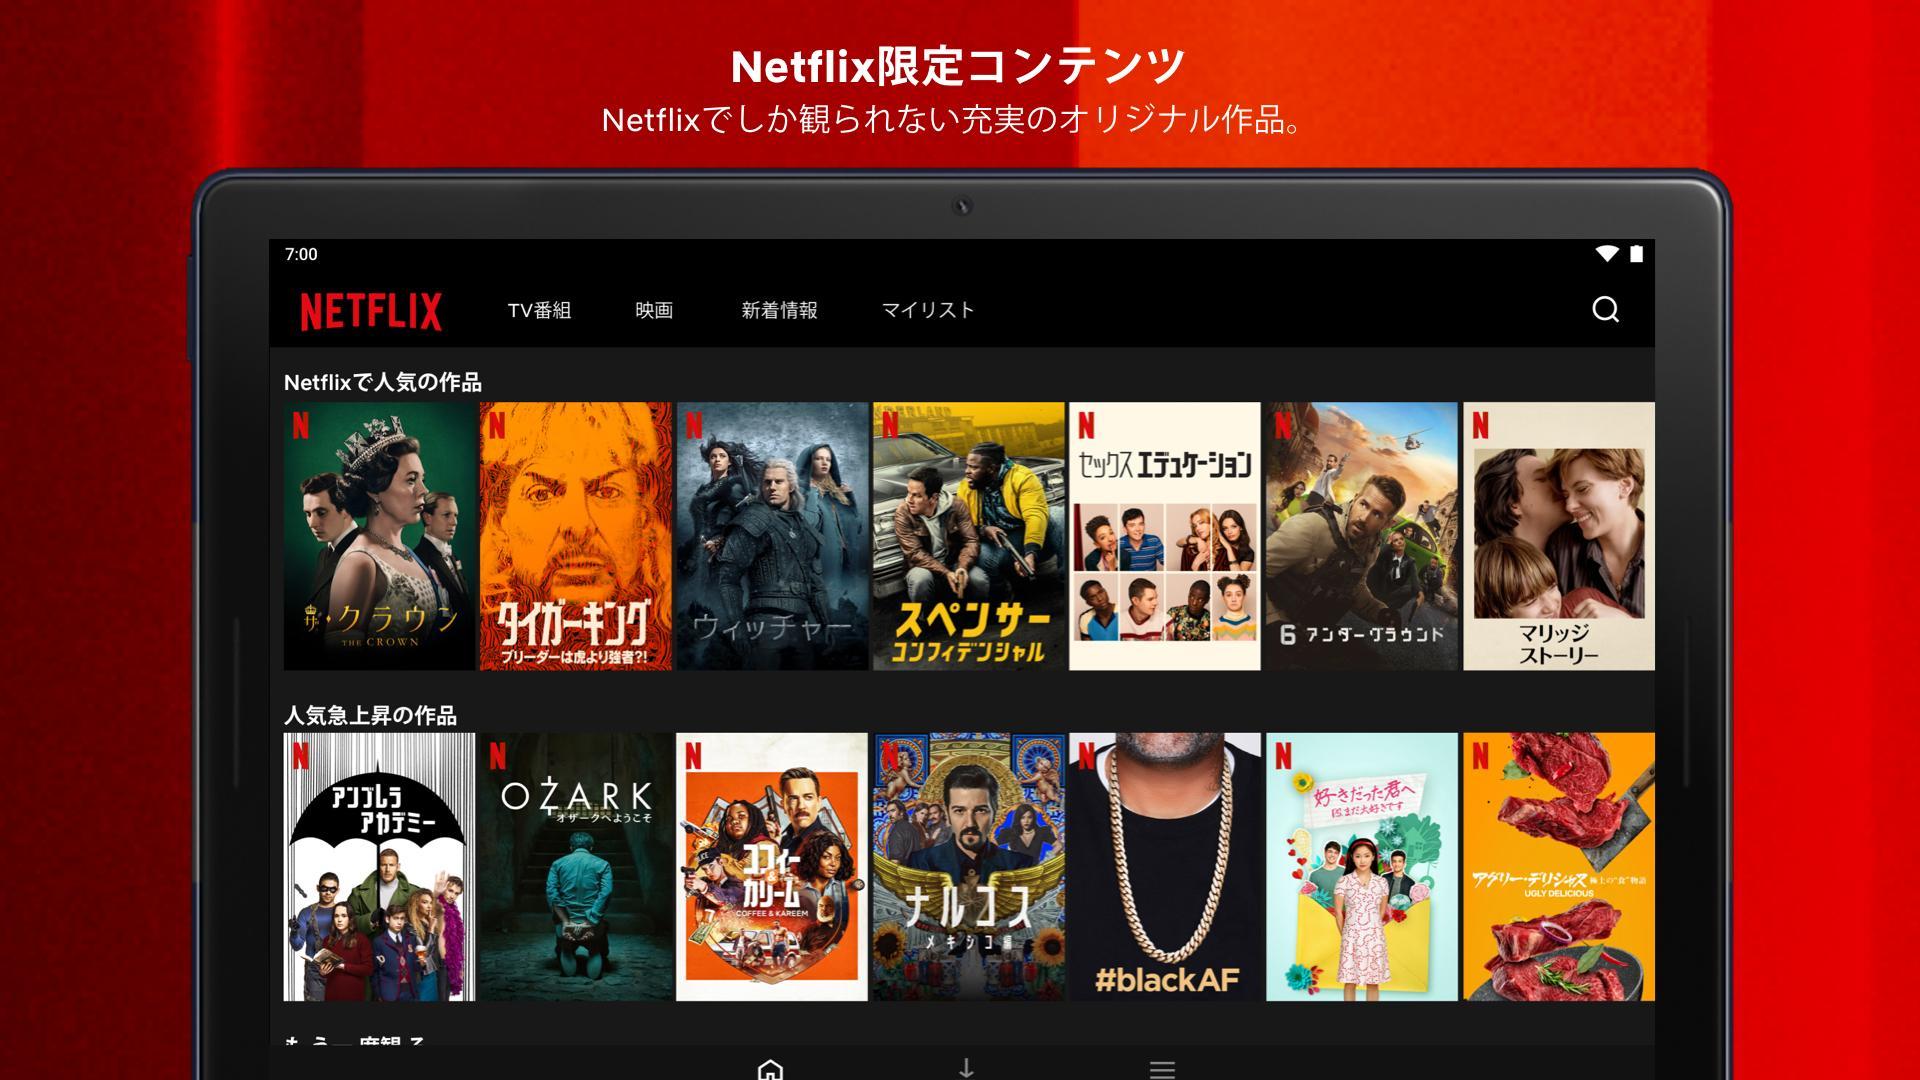 Android 用の Netflix Apk をダウンロード